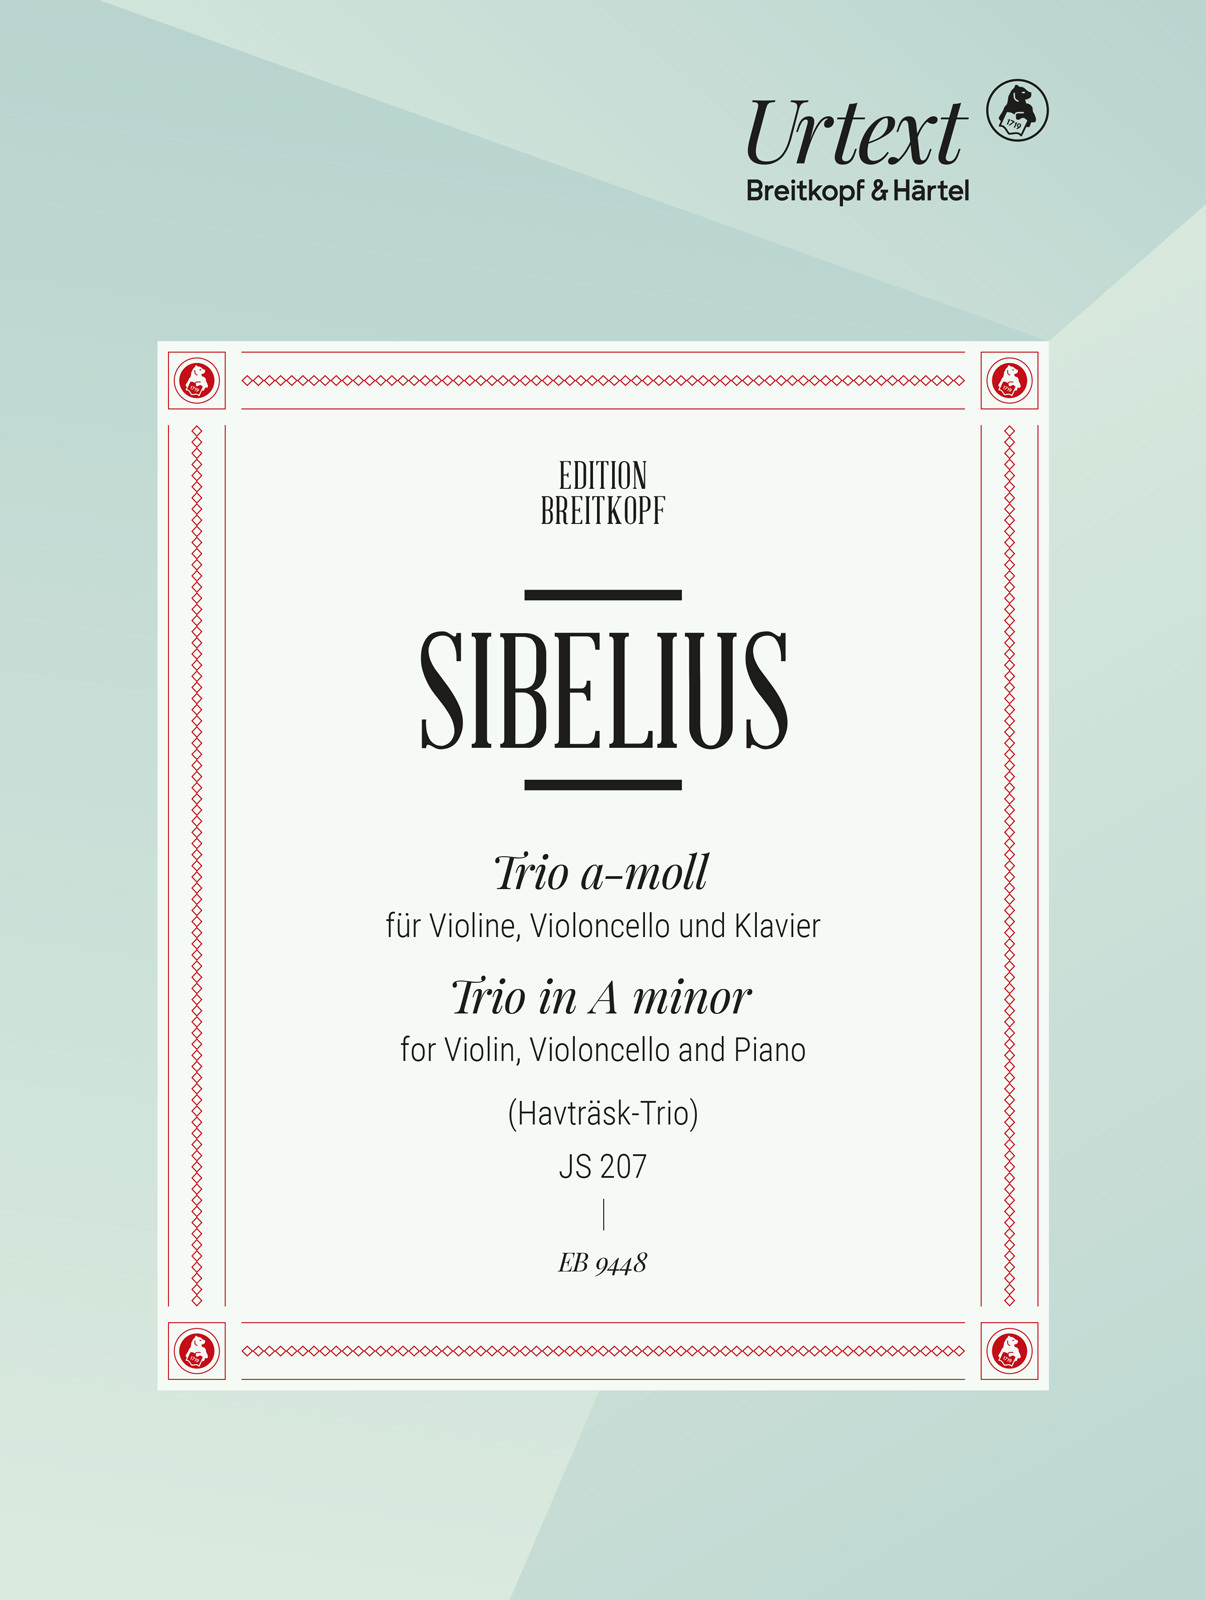 Sibelius Trio In A Min Js207 Violin, Cello & Piano Sheet Music Songbook